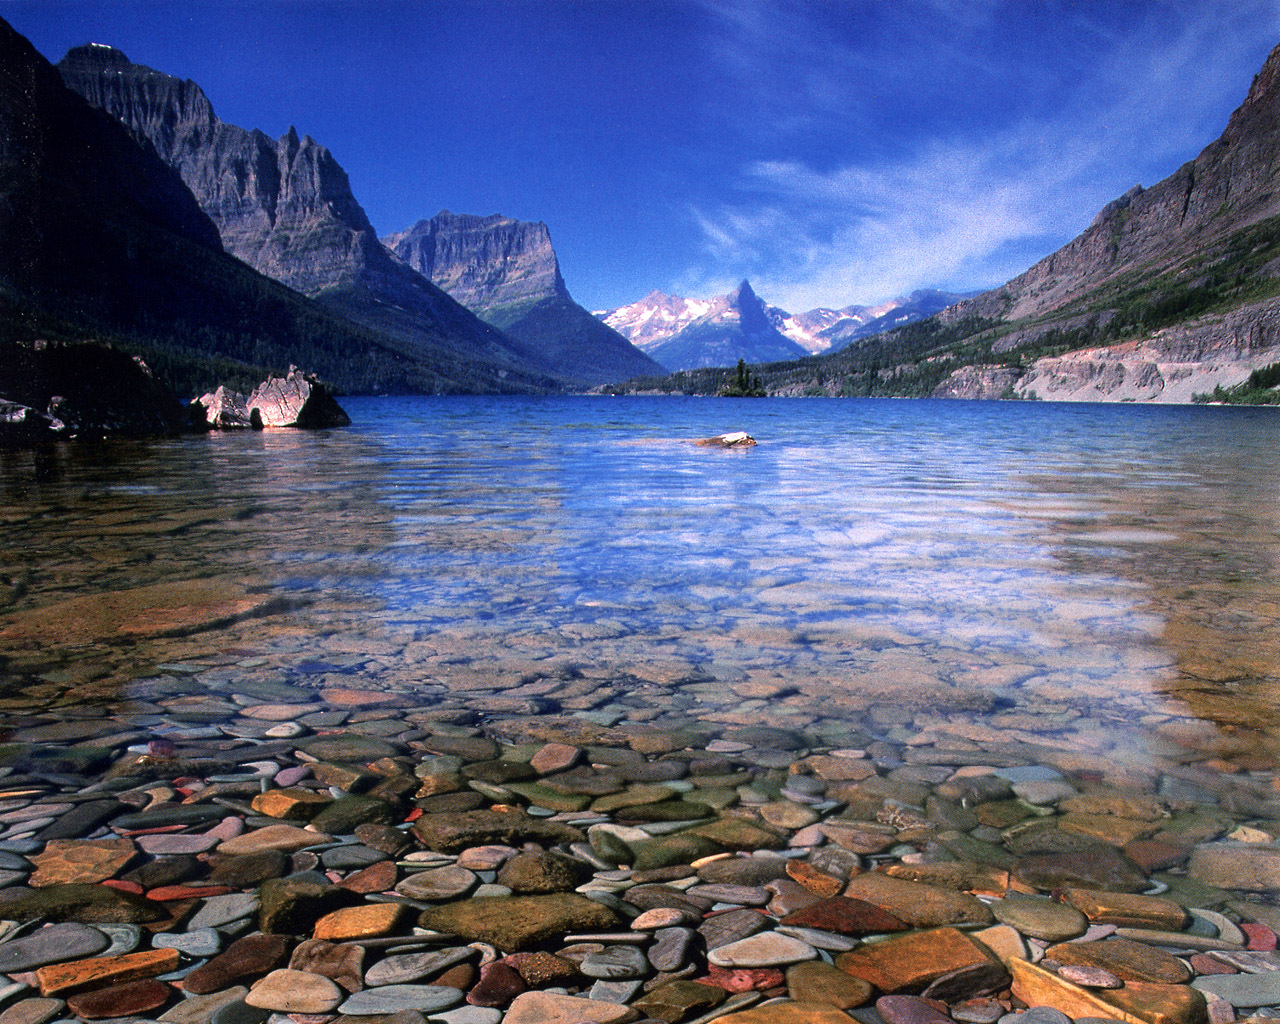 Lake McDonald, Montana - A rock, Lake, beauty, Longpost